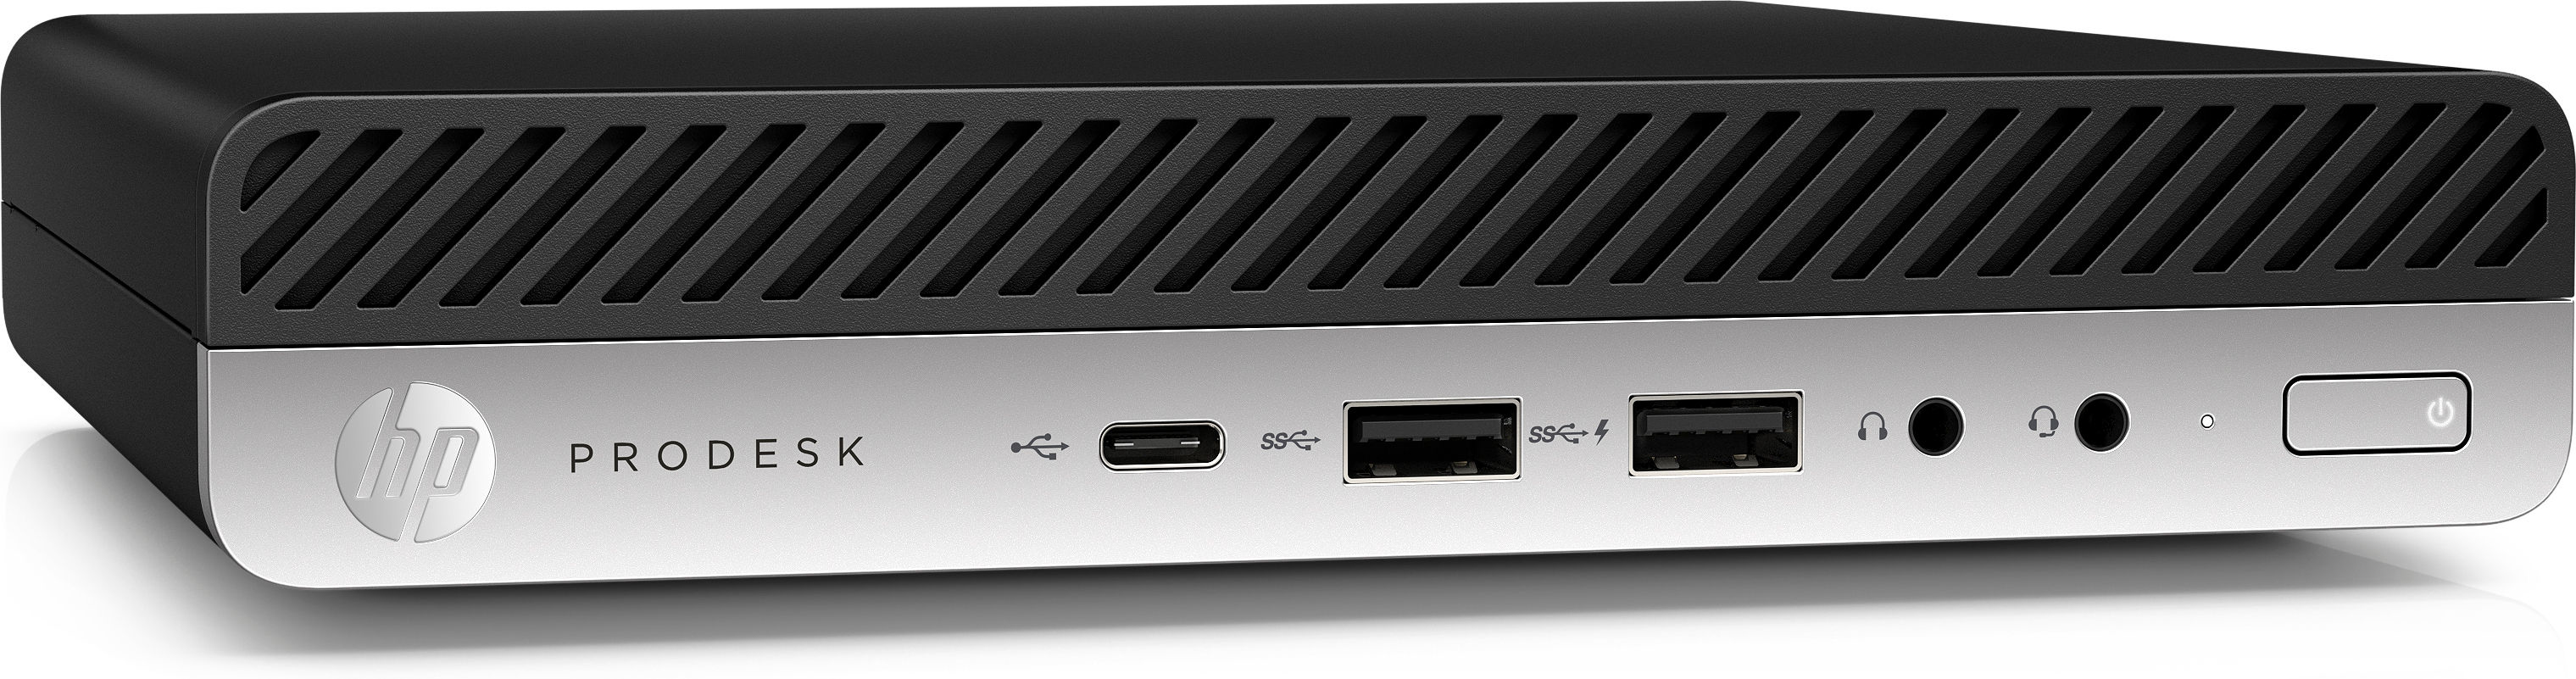 HP ProDesk 600 G3 - Mini desktop-5.jpg